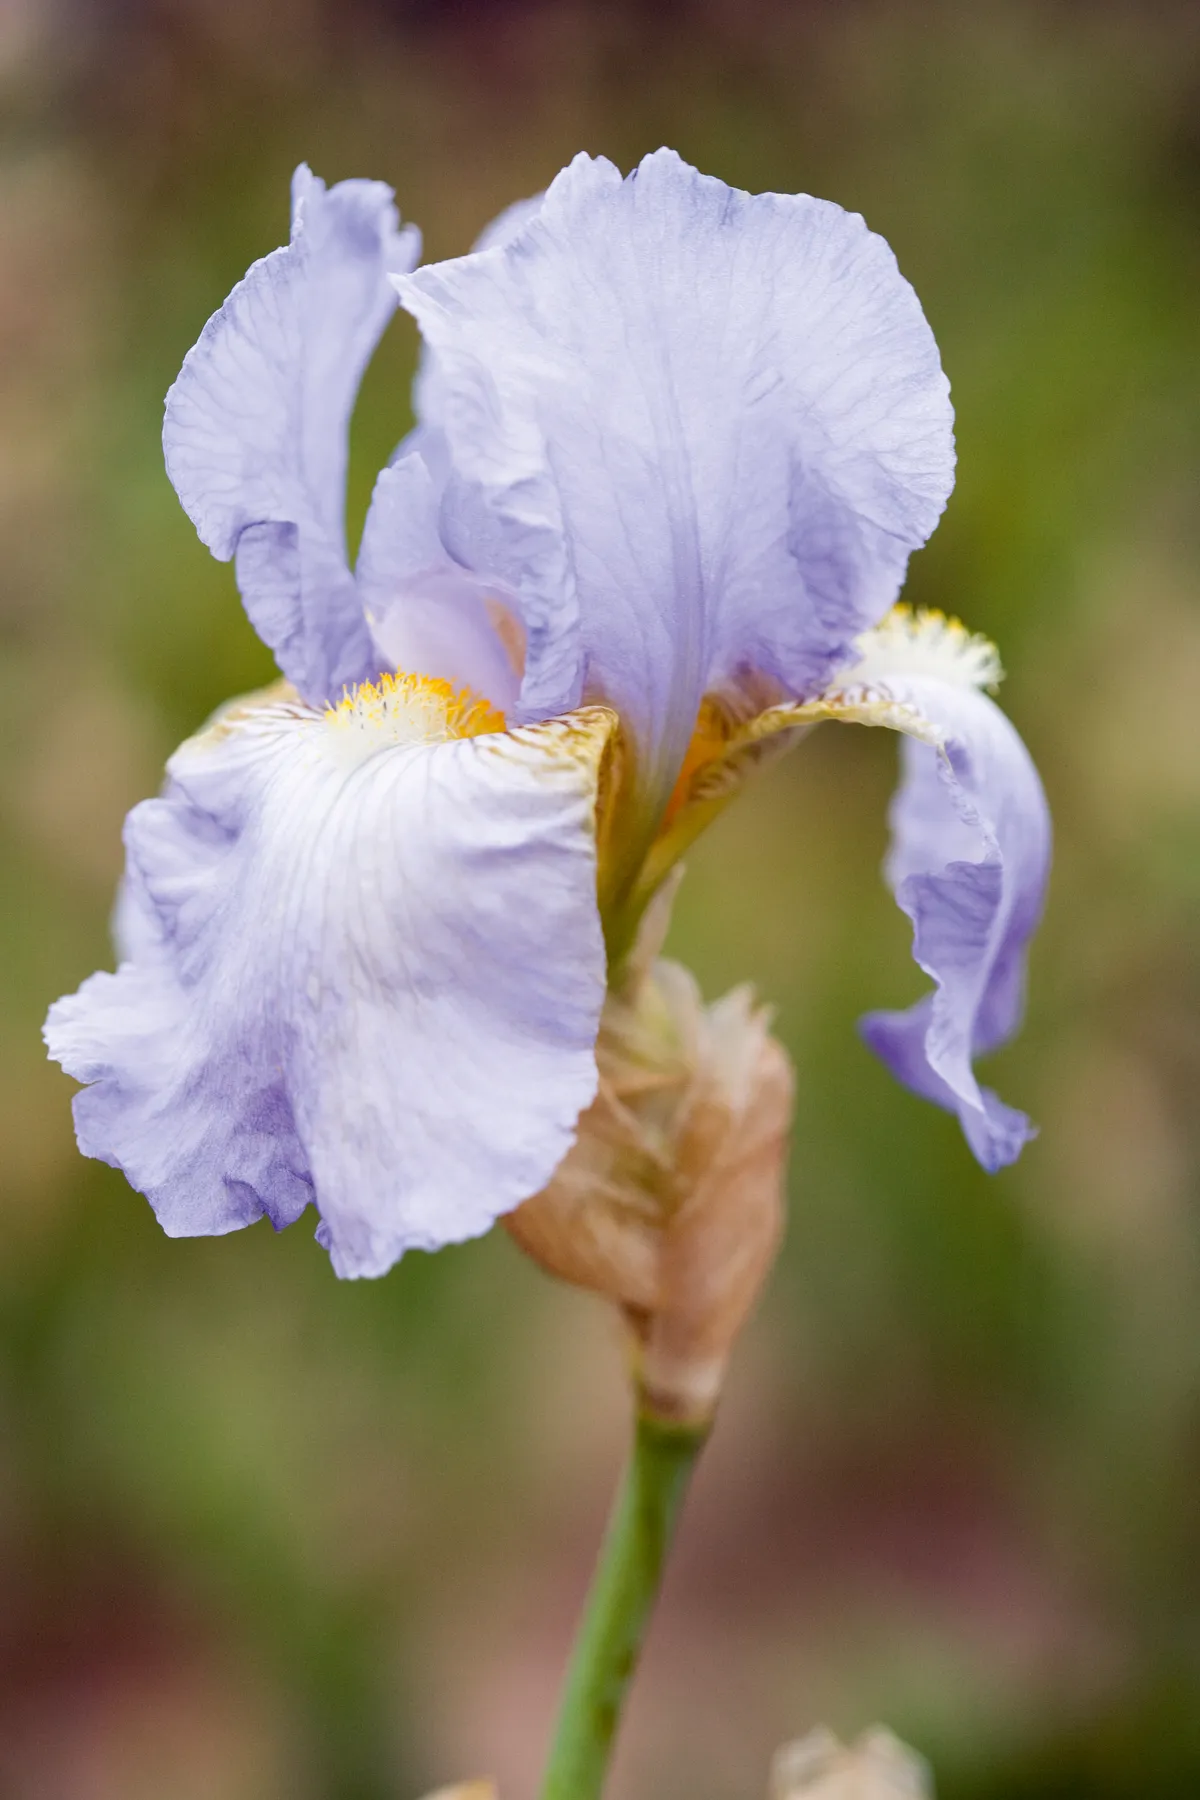 Iris germanica 'Harbor Blue'